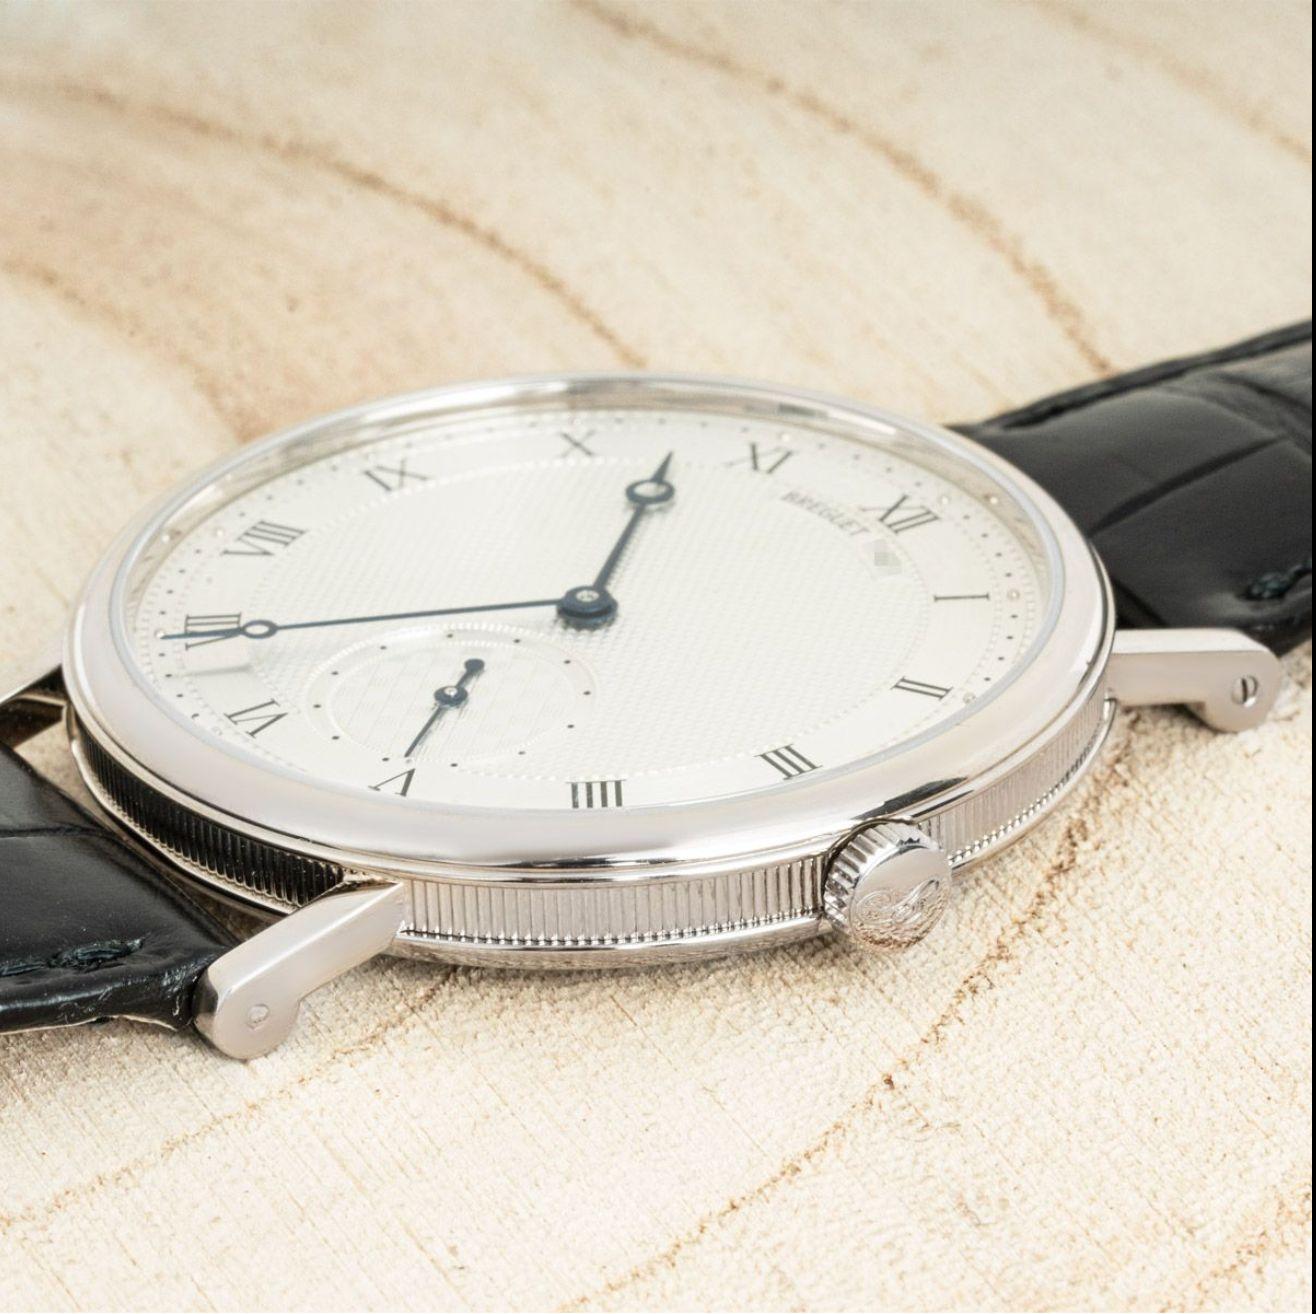 Une montre-bracelet Breguet Classique en or blanc. Whiting : cadran argenté avec motif guilloché texturé, petite seconde et lunette en or blanc.

Équipé d'un bracelet en cuir noir Beguet et d'une boucle ardillon en or blanc. La montre est également